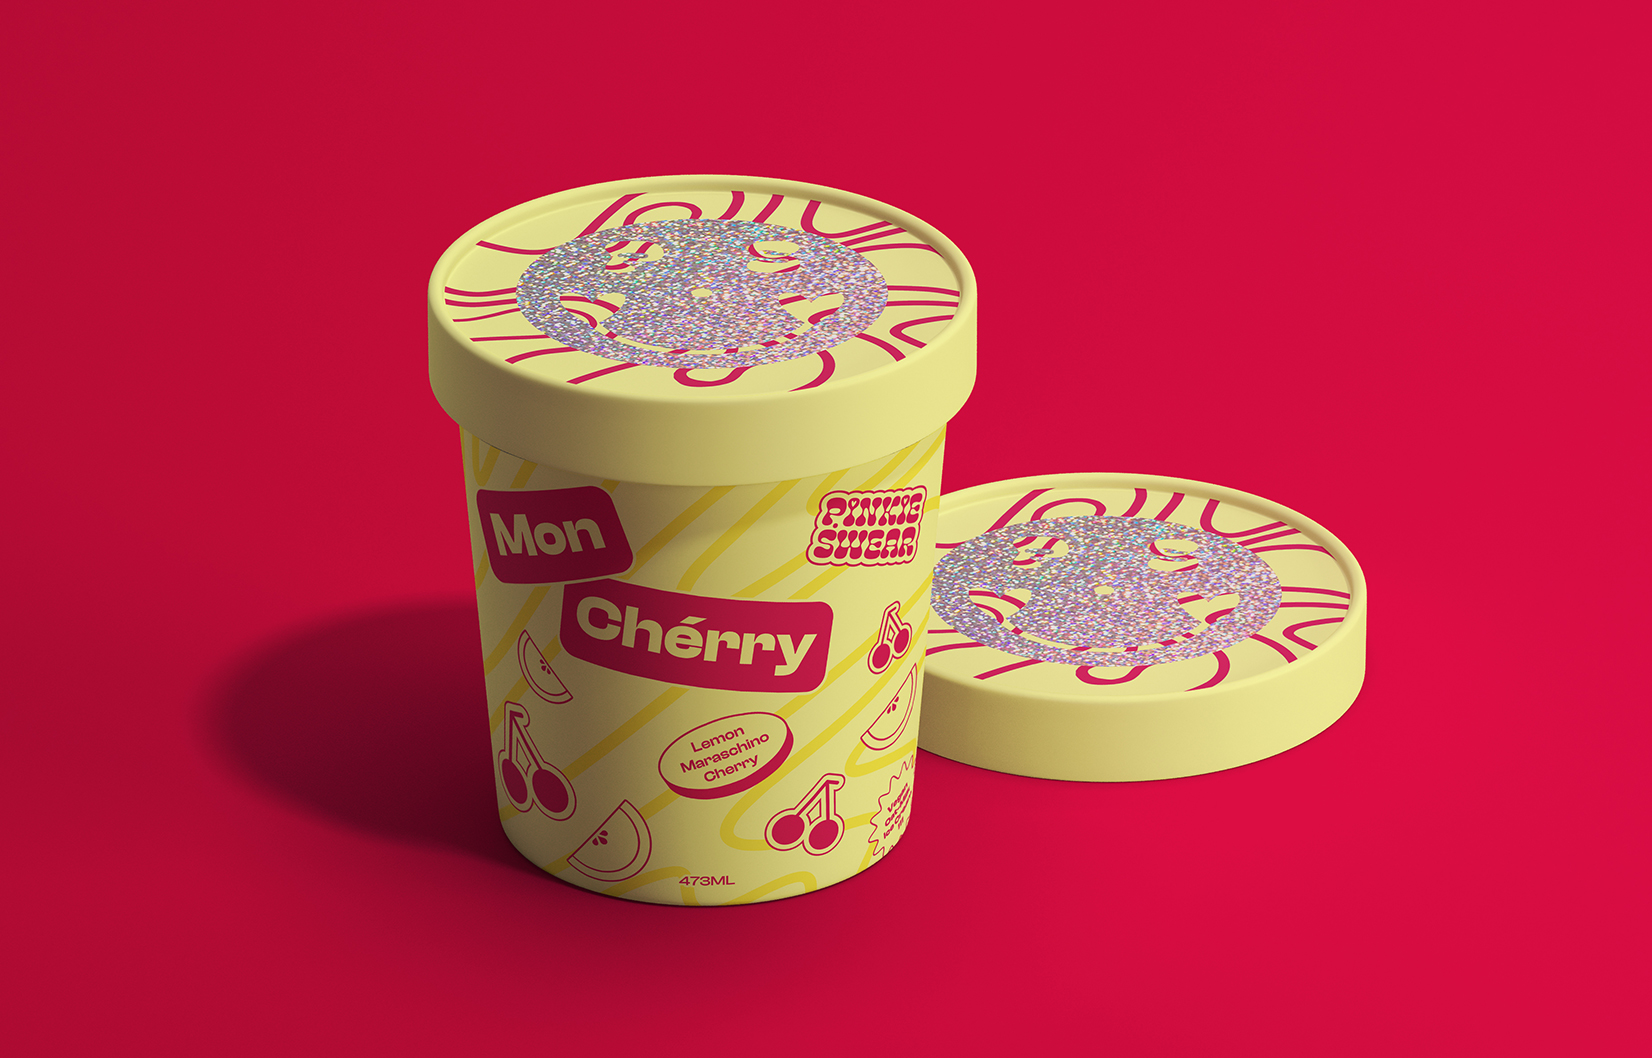 Mon Cherry Ice Cream.